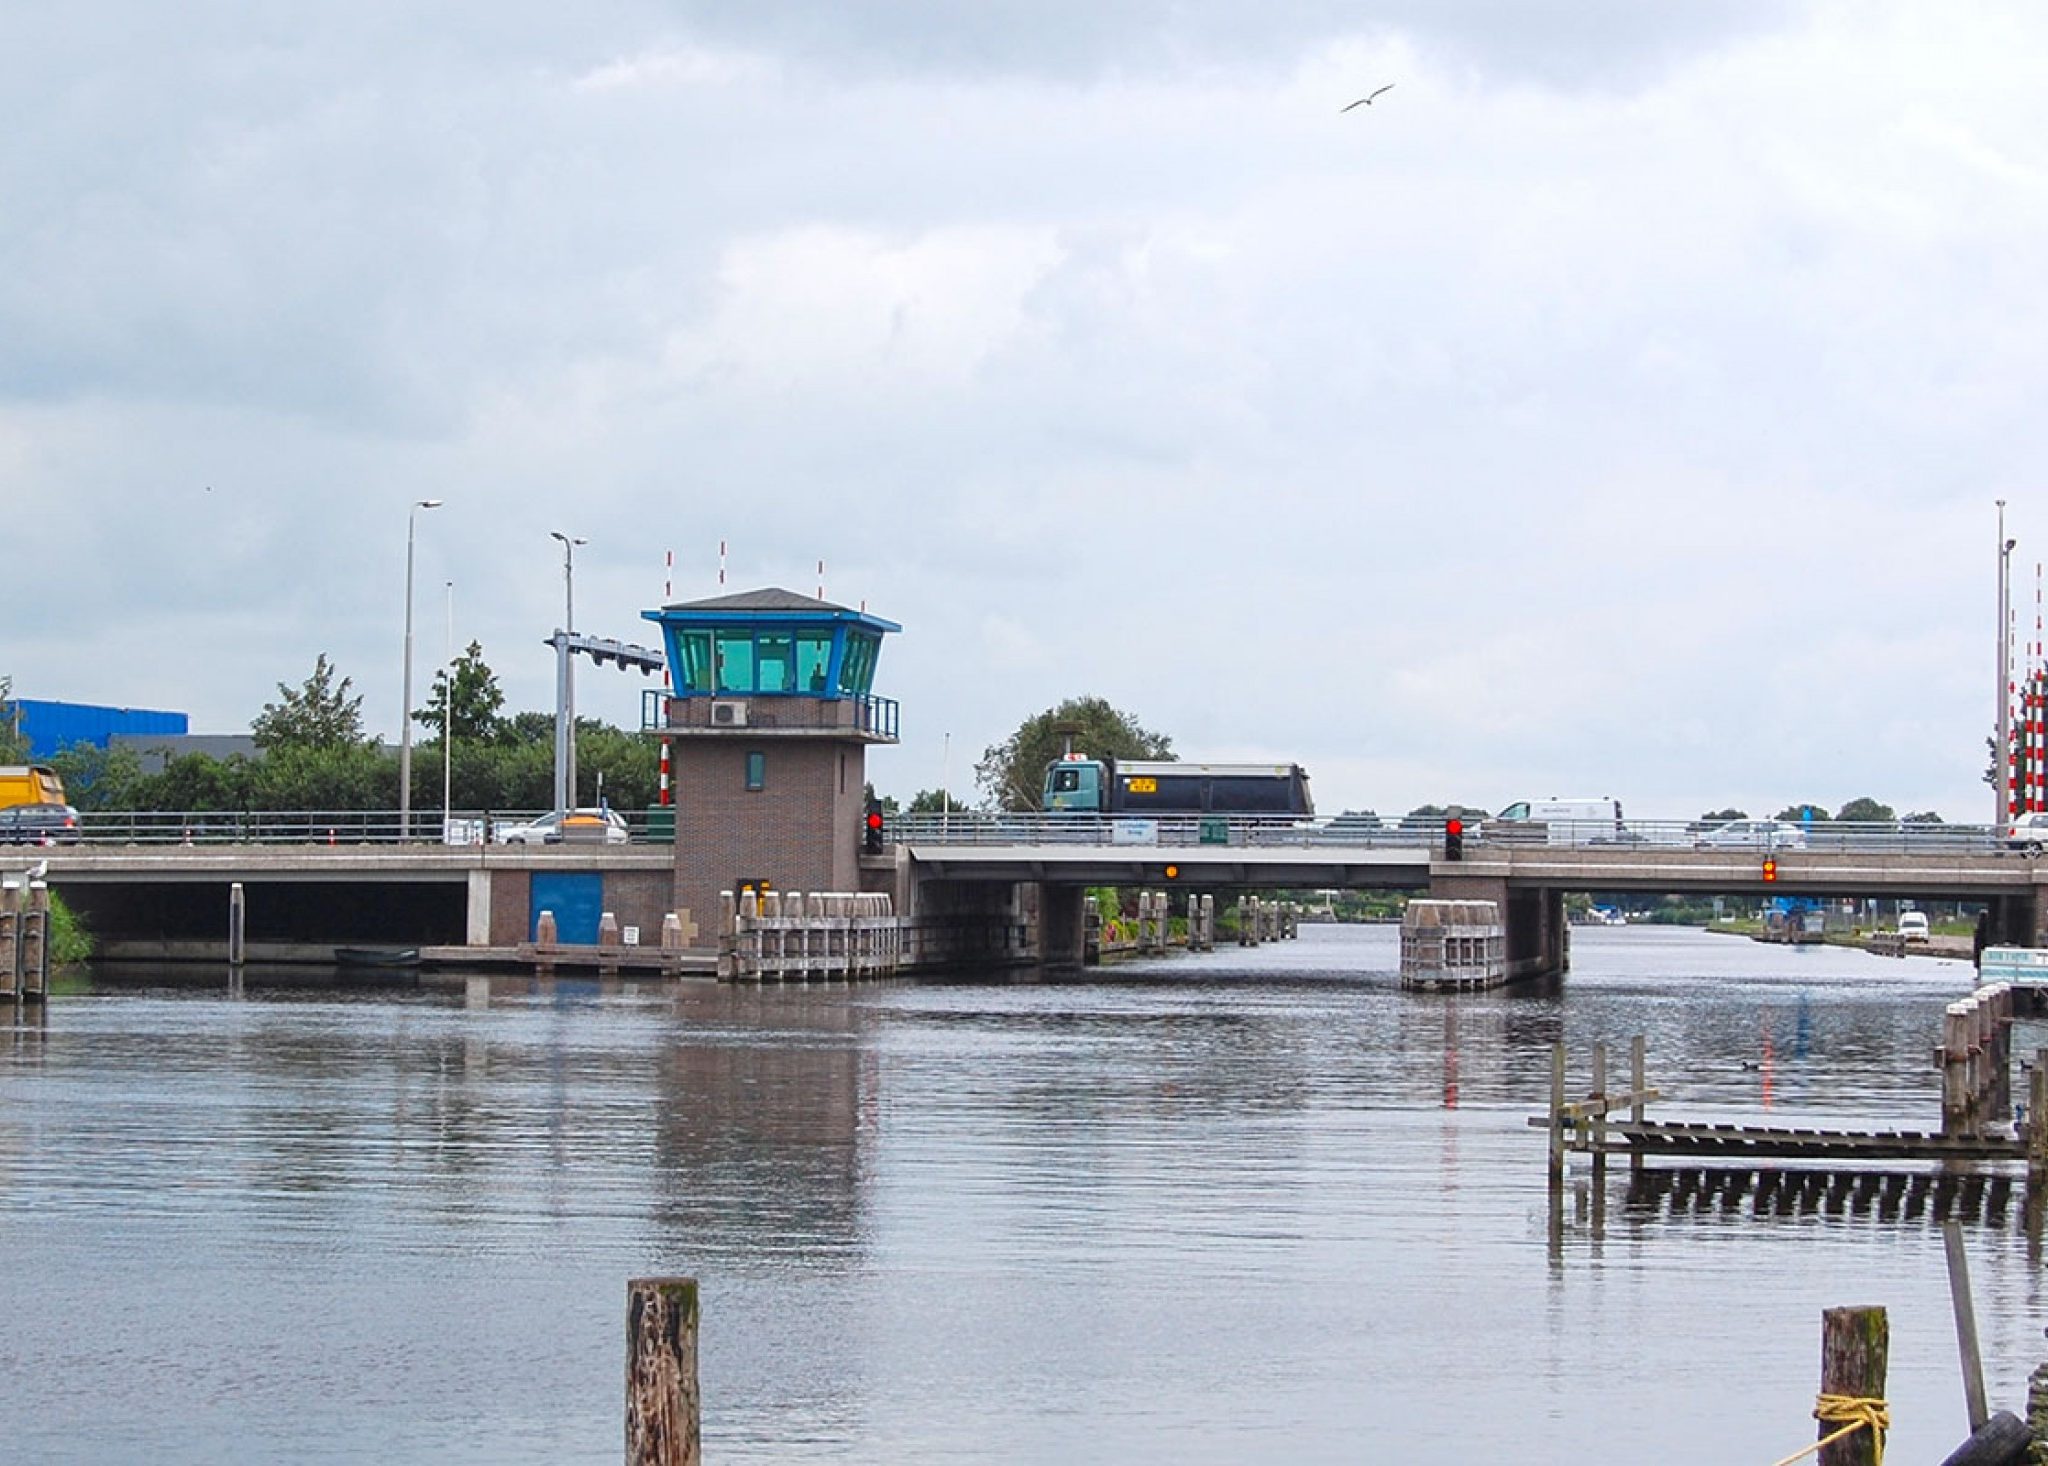 De bediening van de bruggen in Noord-Holland wordt gedaan vanuit een centrale in Heerhugowaard. (Foto Provincie Noord-Holland)